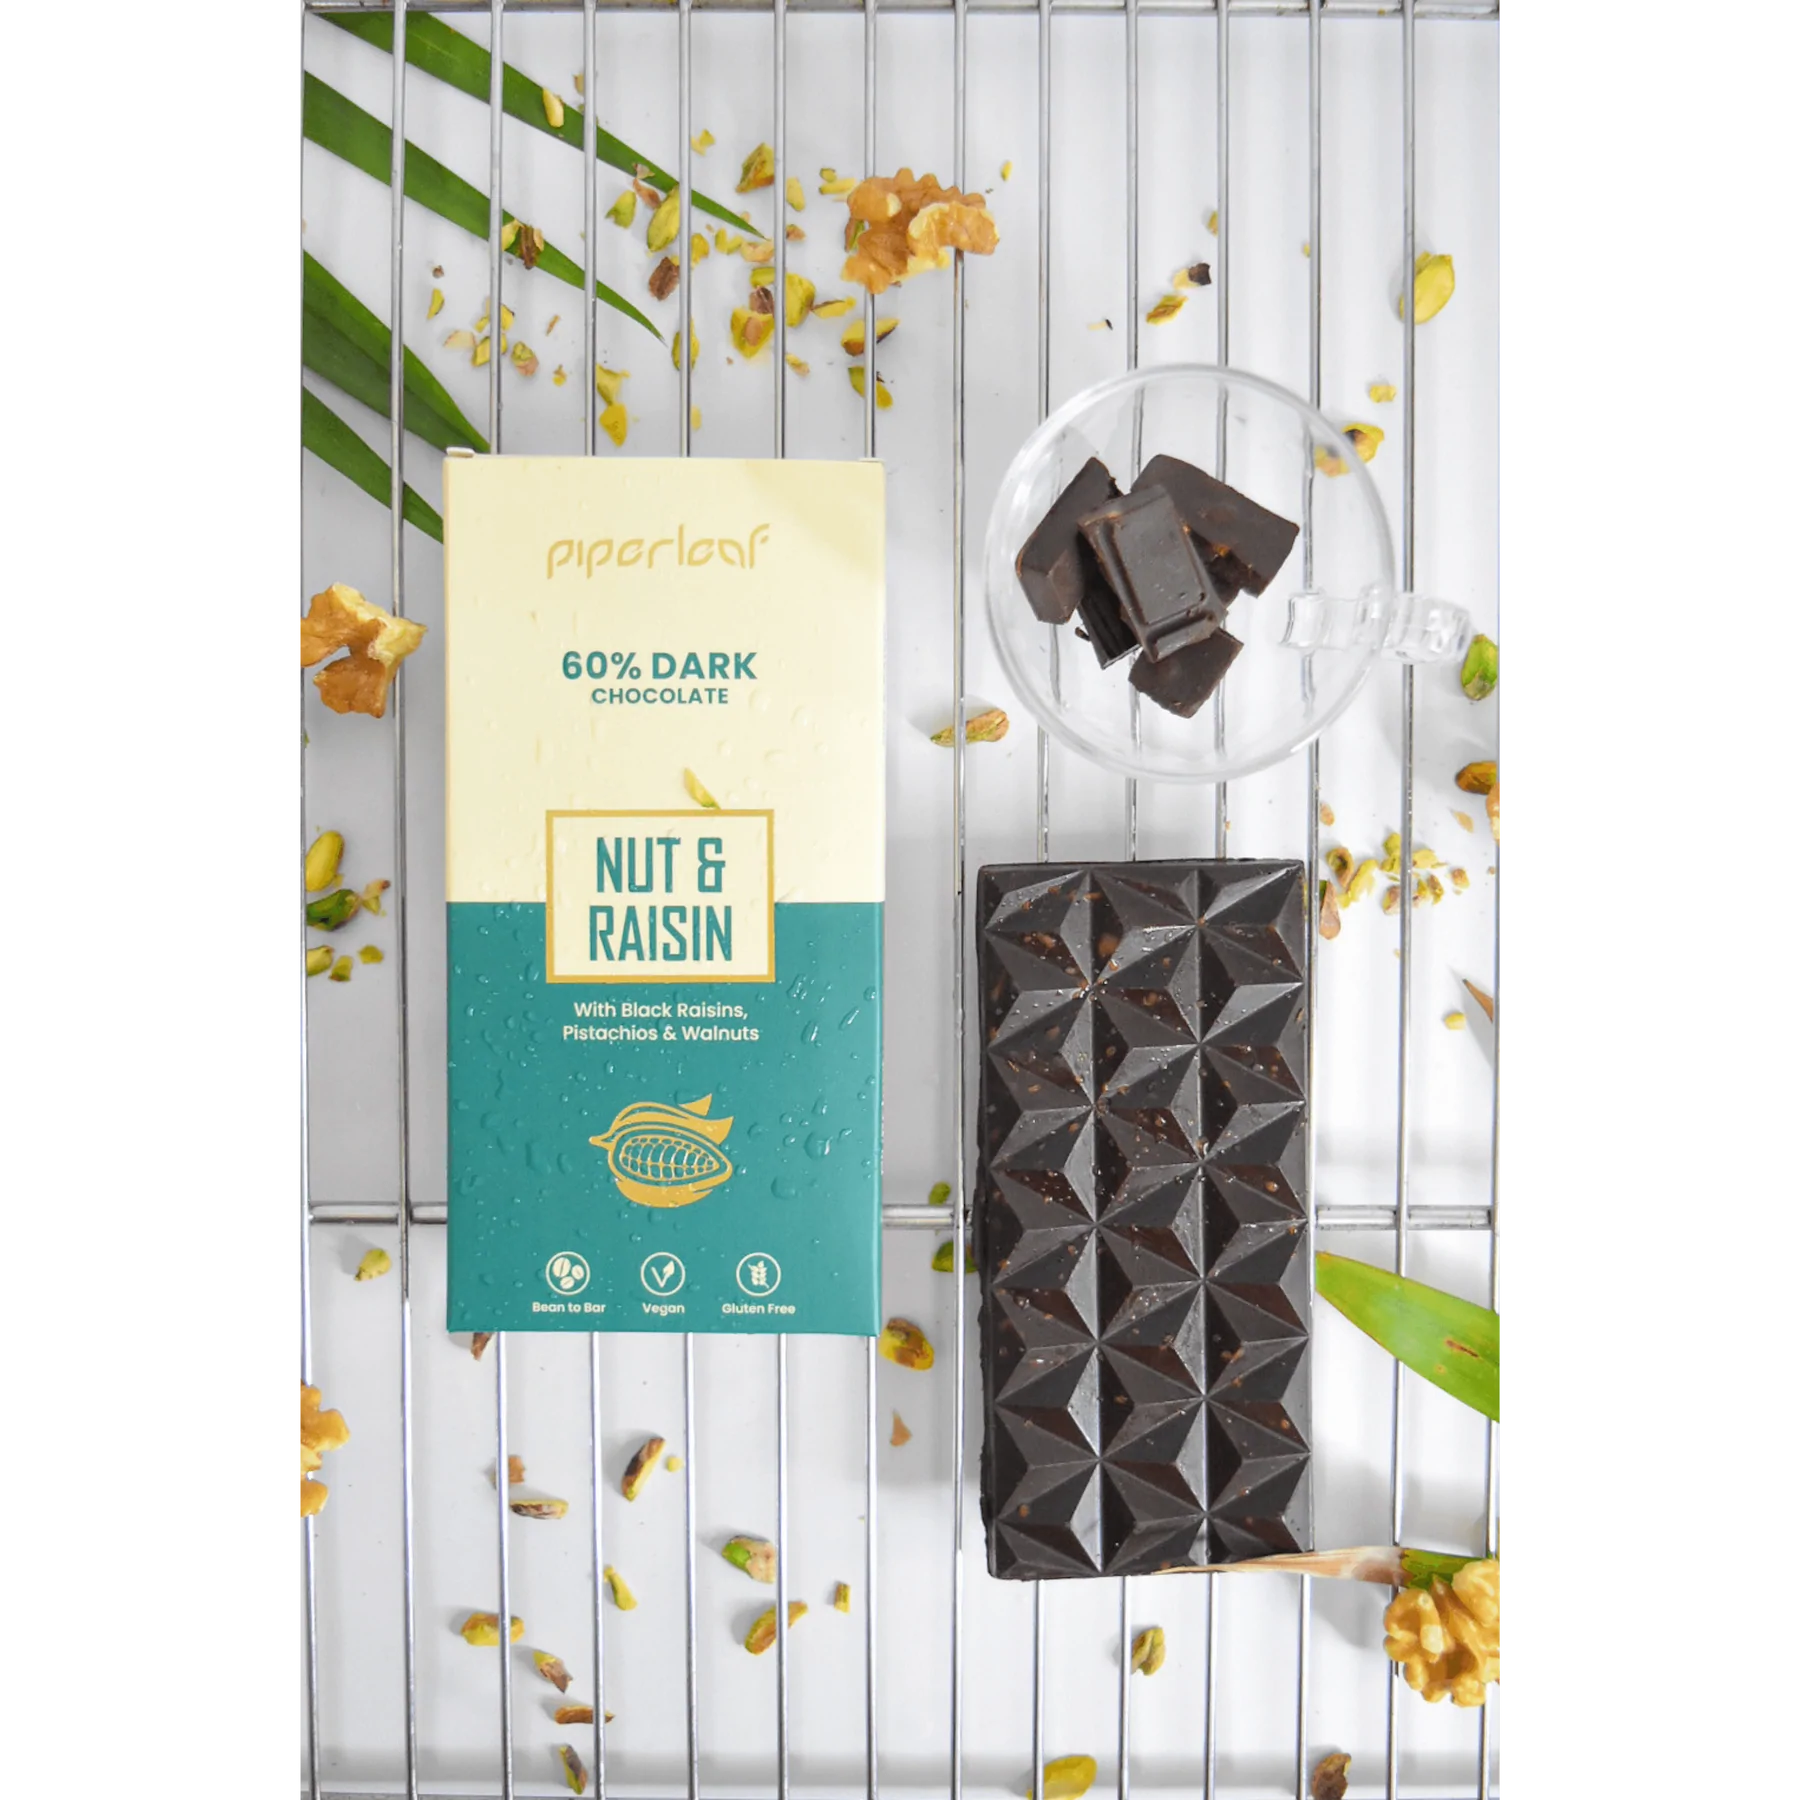 Piperleaf 60% Dark Chocolate Nut & Raisin Image